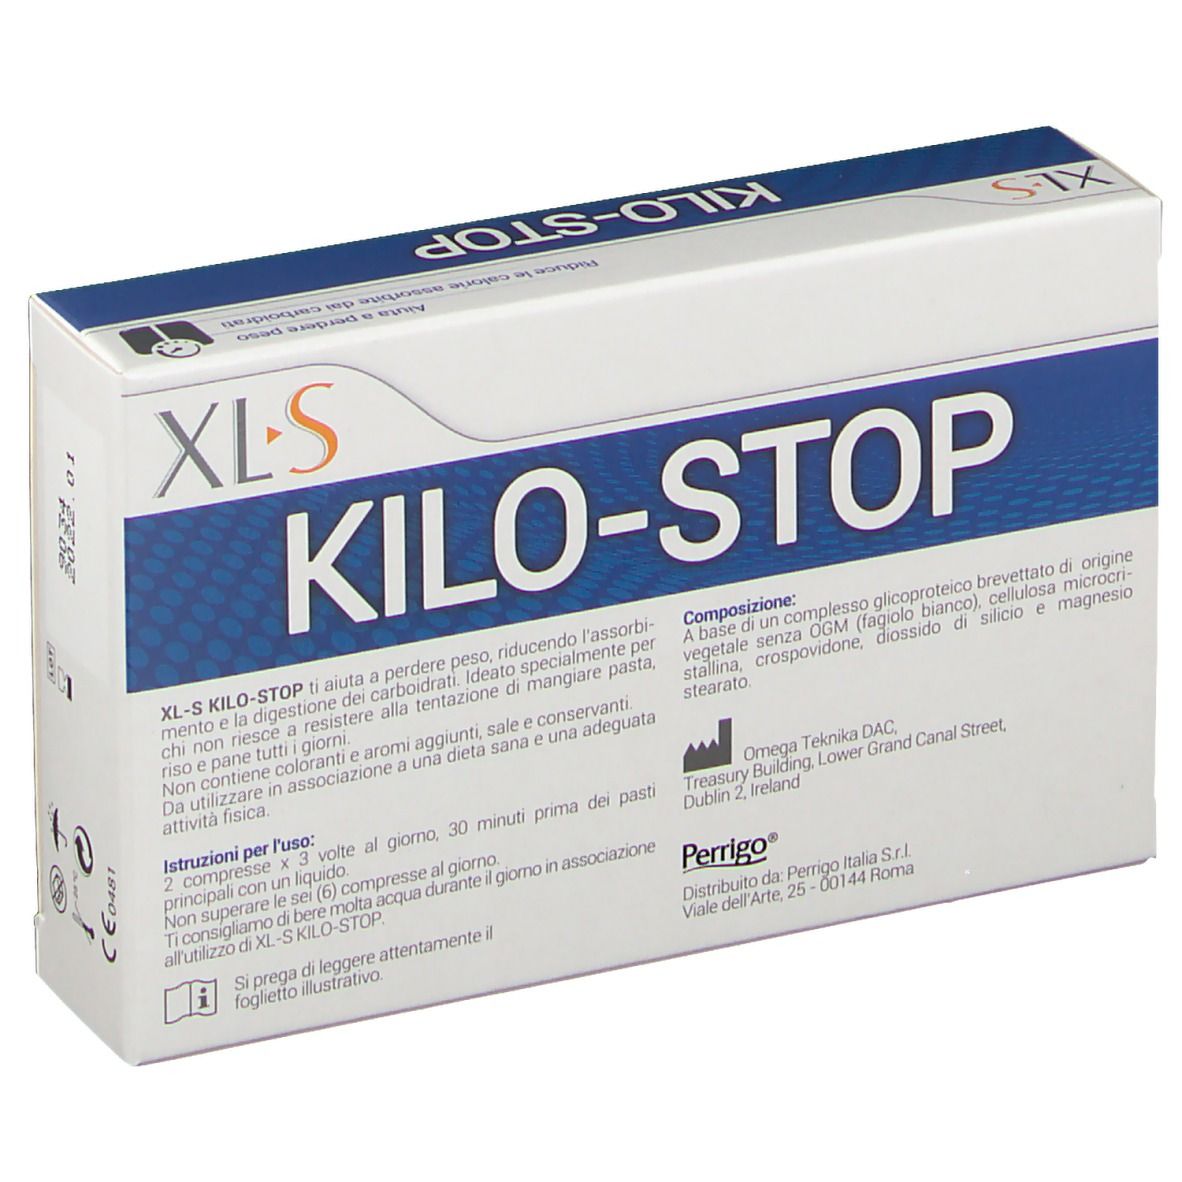 XL-S Kilo-Stop